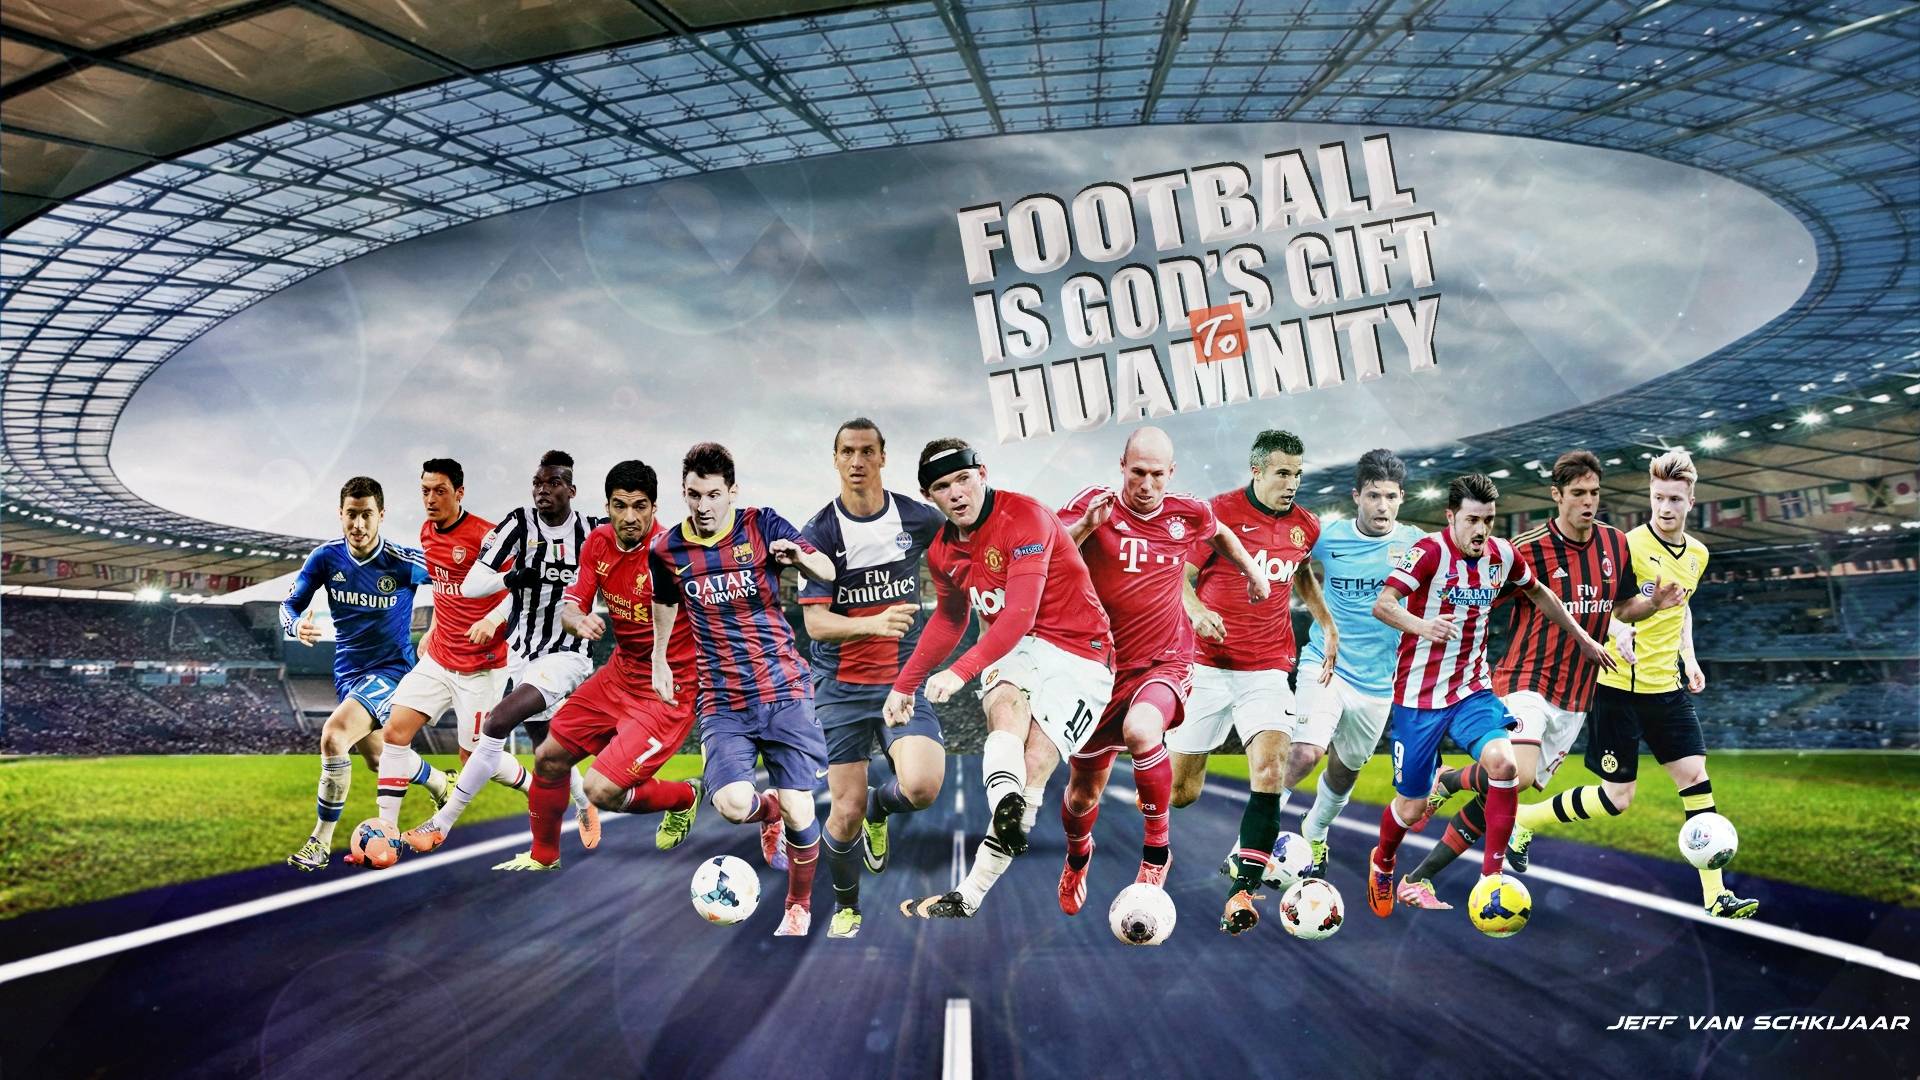 Football Superstar Player Wallpaper Widescreen Football HD Free